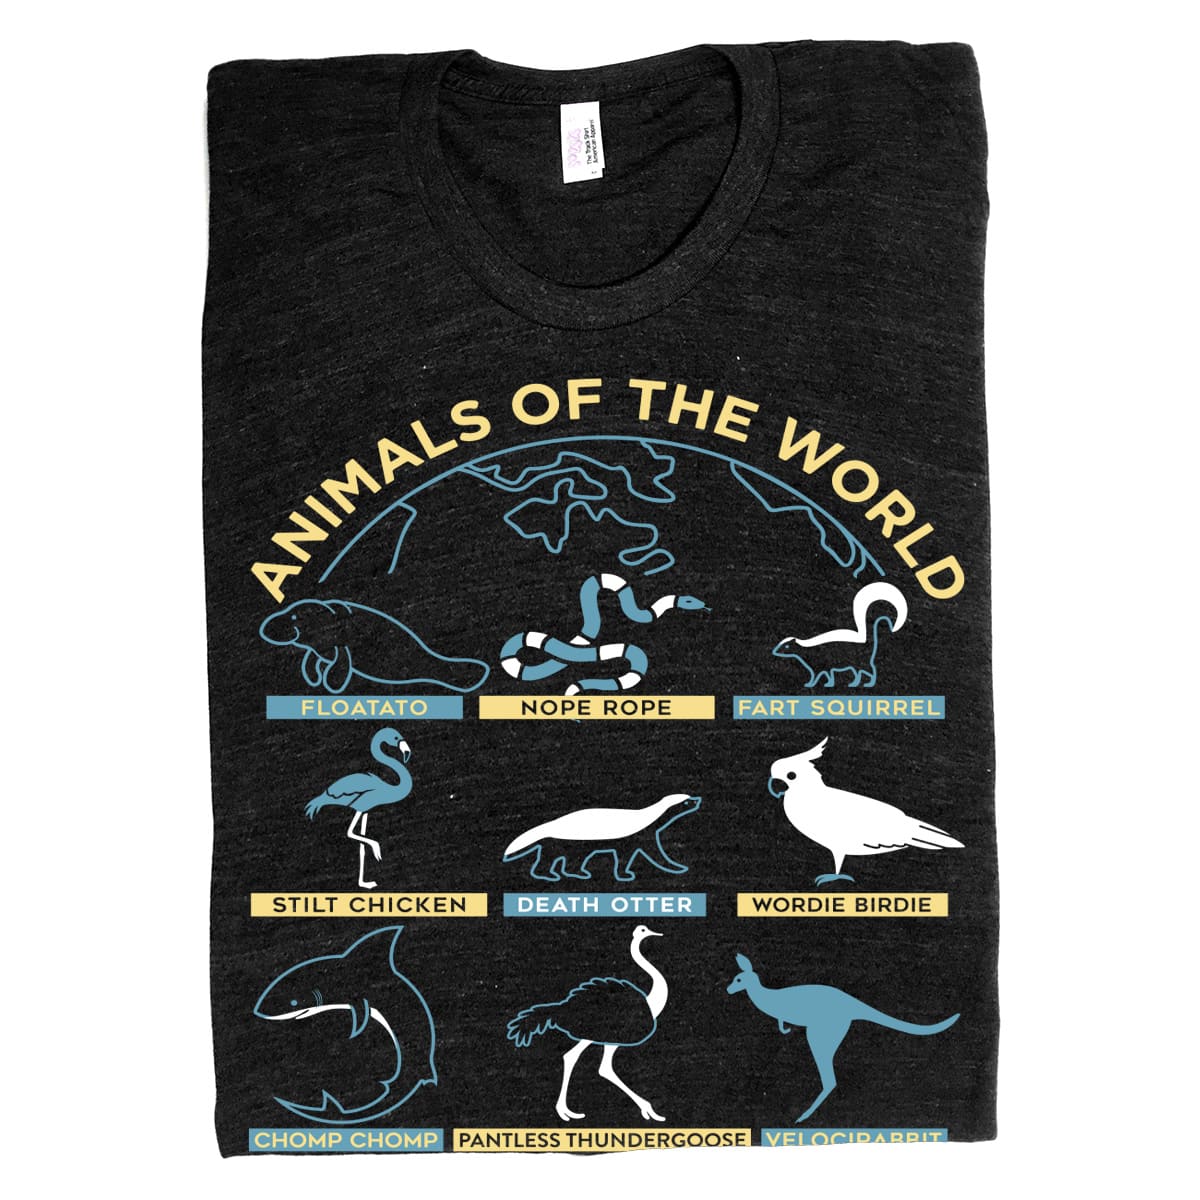 Animals Of The Worlds - Floatato Nope Rope Fart Squirrel Stilt Chicken Death Otter